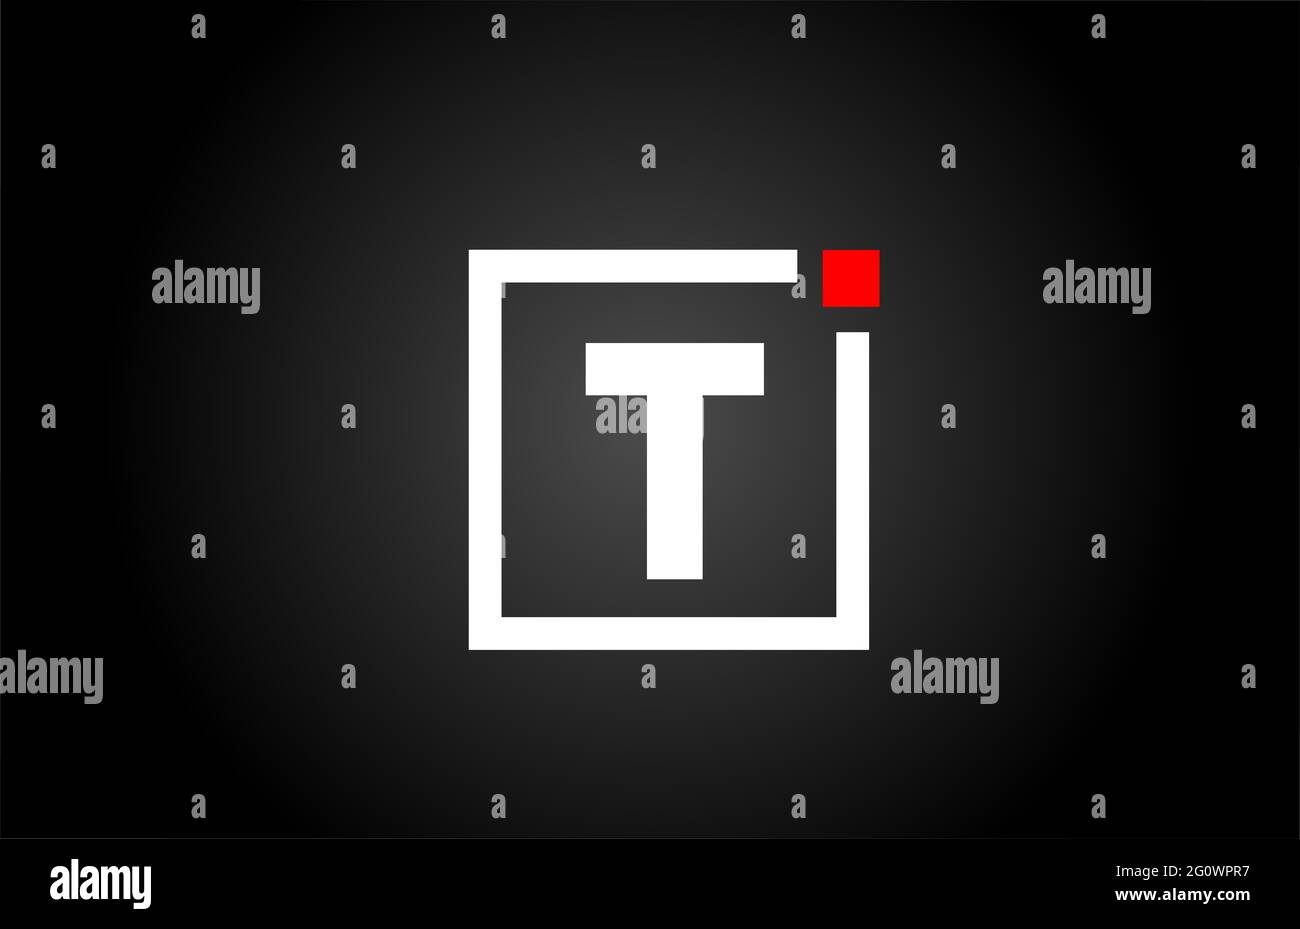 Logo con l'icona lettera dell'alfabeto T in bianco e nero. Design aziendale e aziendale con punto quadrato e rosso. Modello di identità aziendale creativa Foto Stock